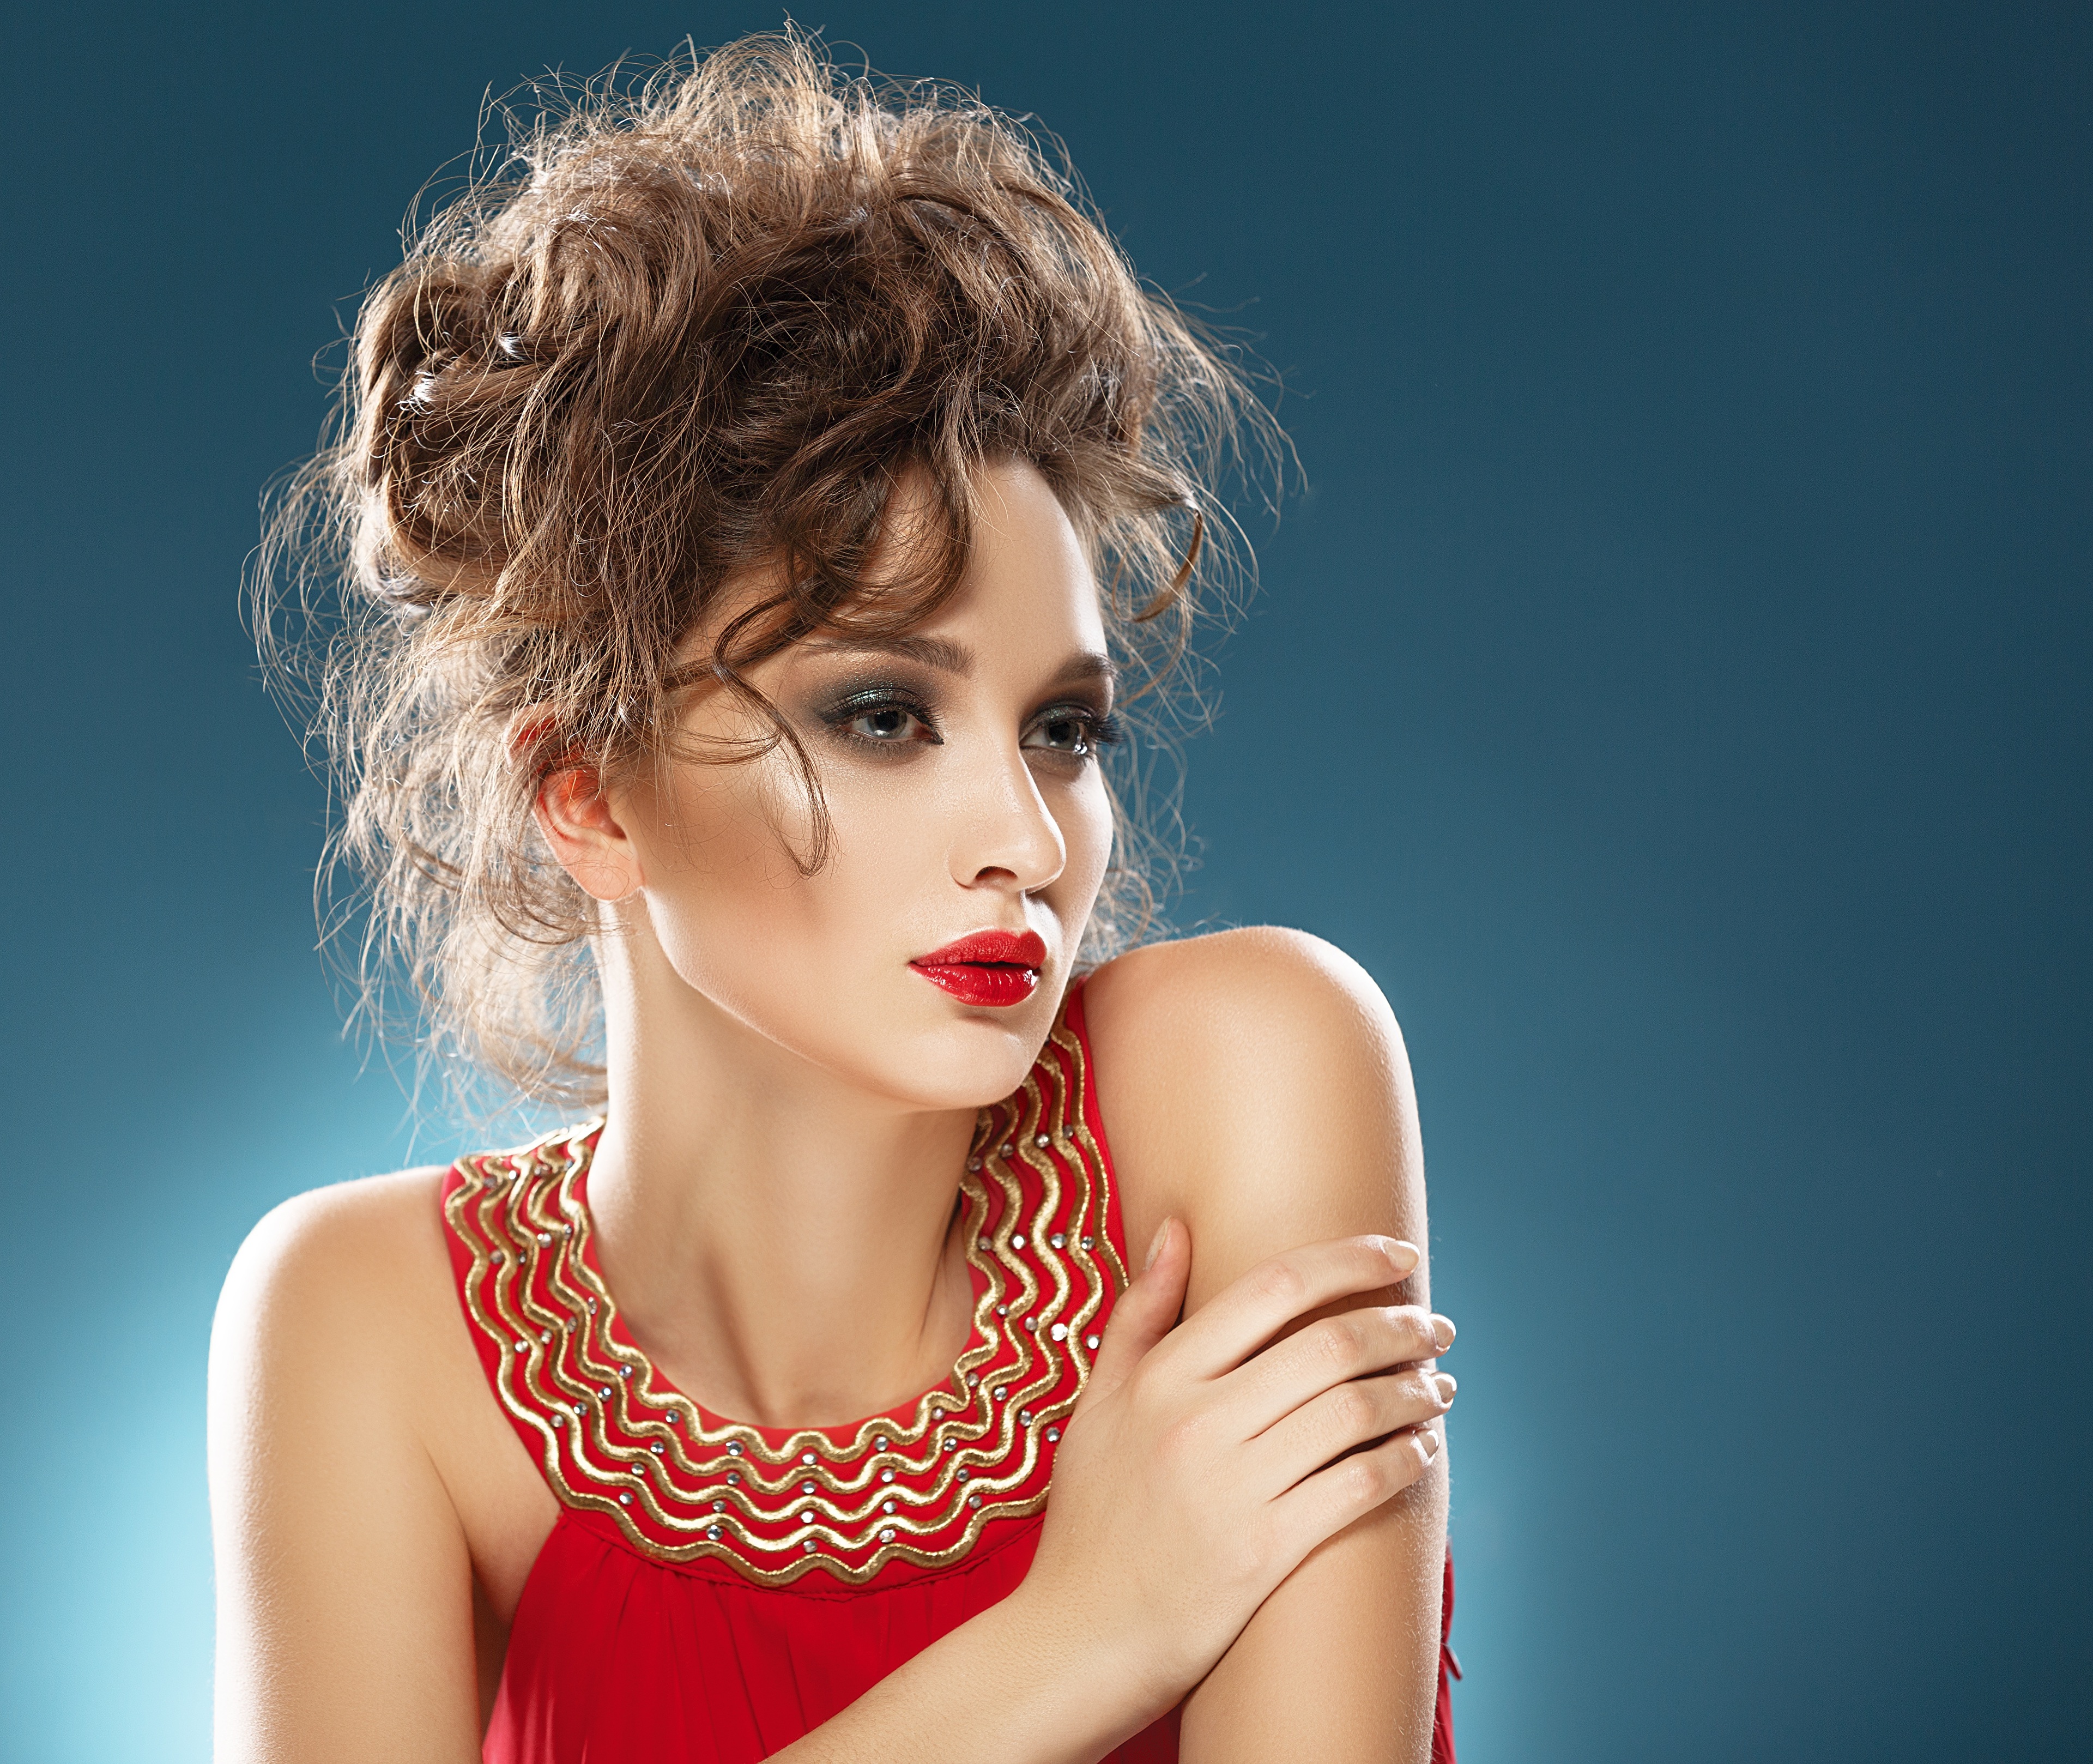 Download Lipstick Brunette Woman Model 4k Ultra Hd Wallpaper